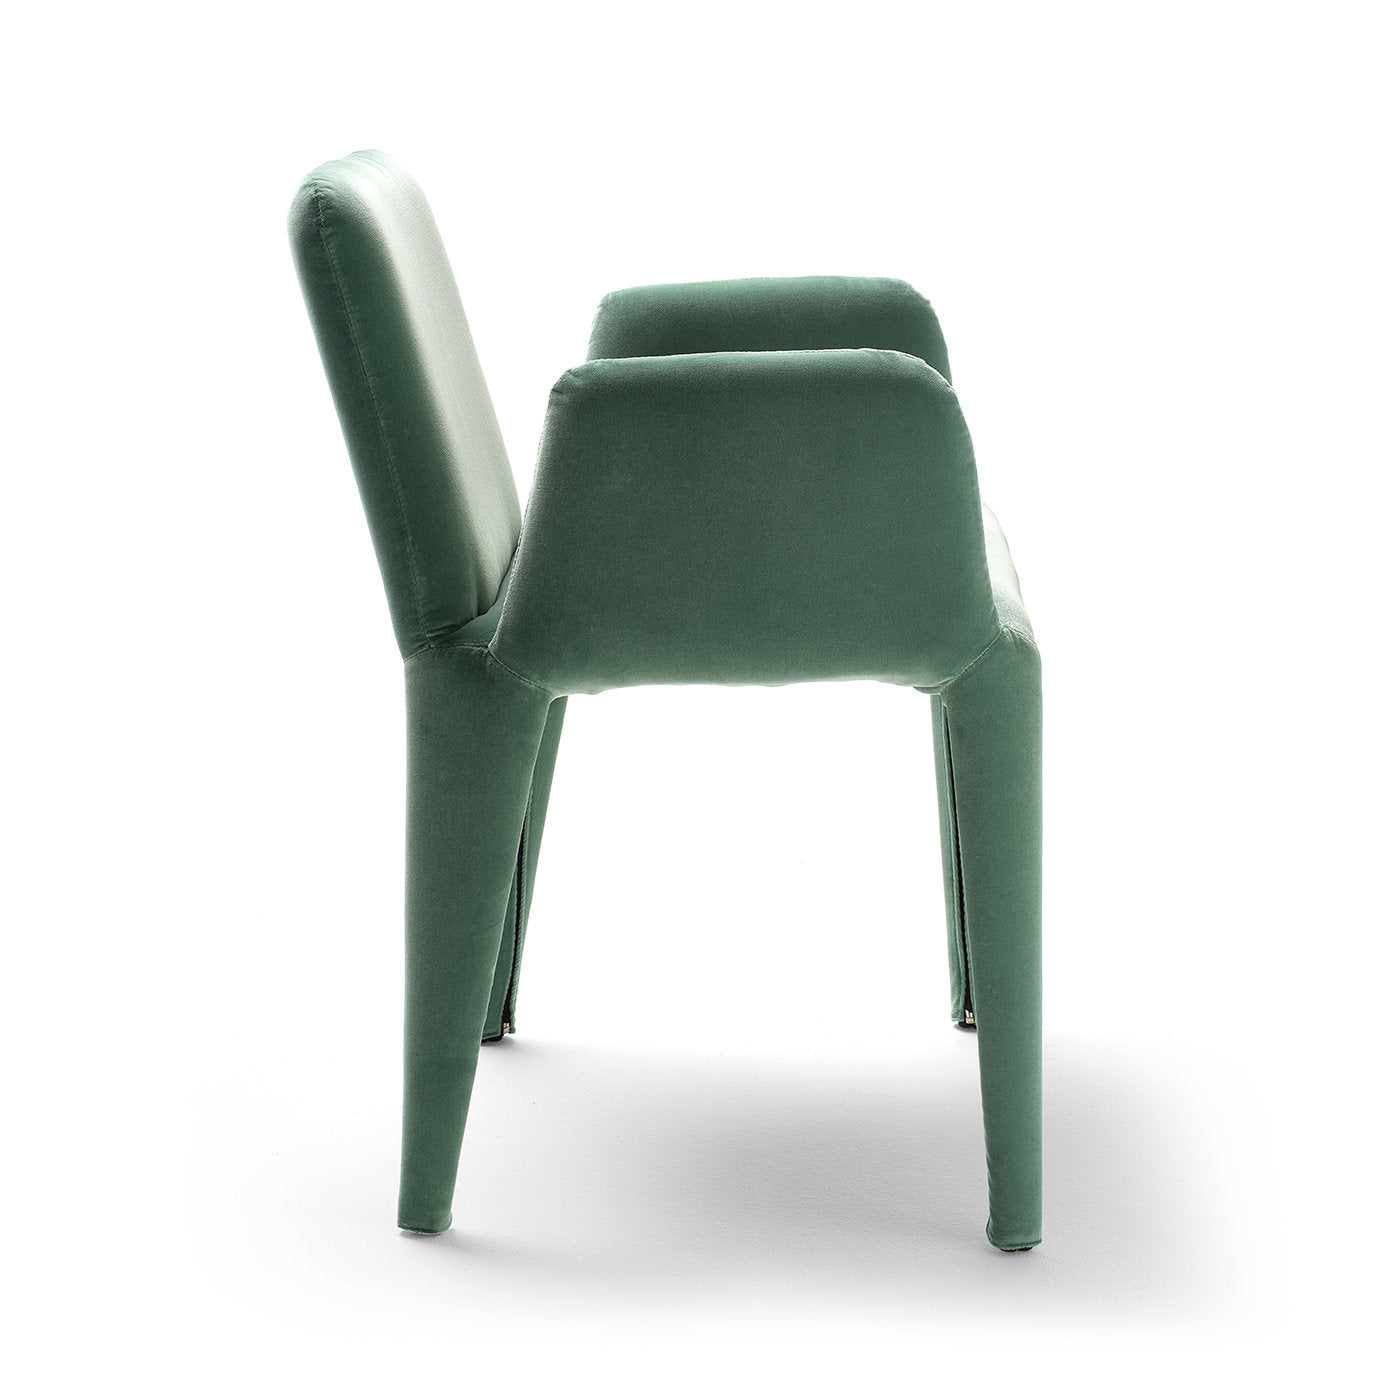 Nova Small Dining chair by Federico Carandini - Alternative view 2